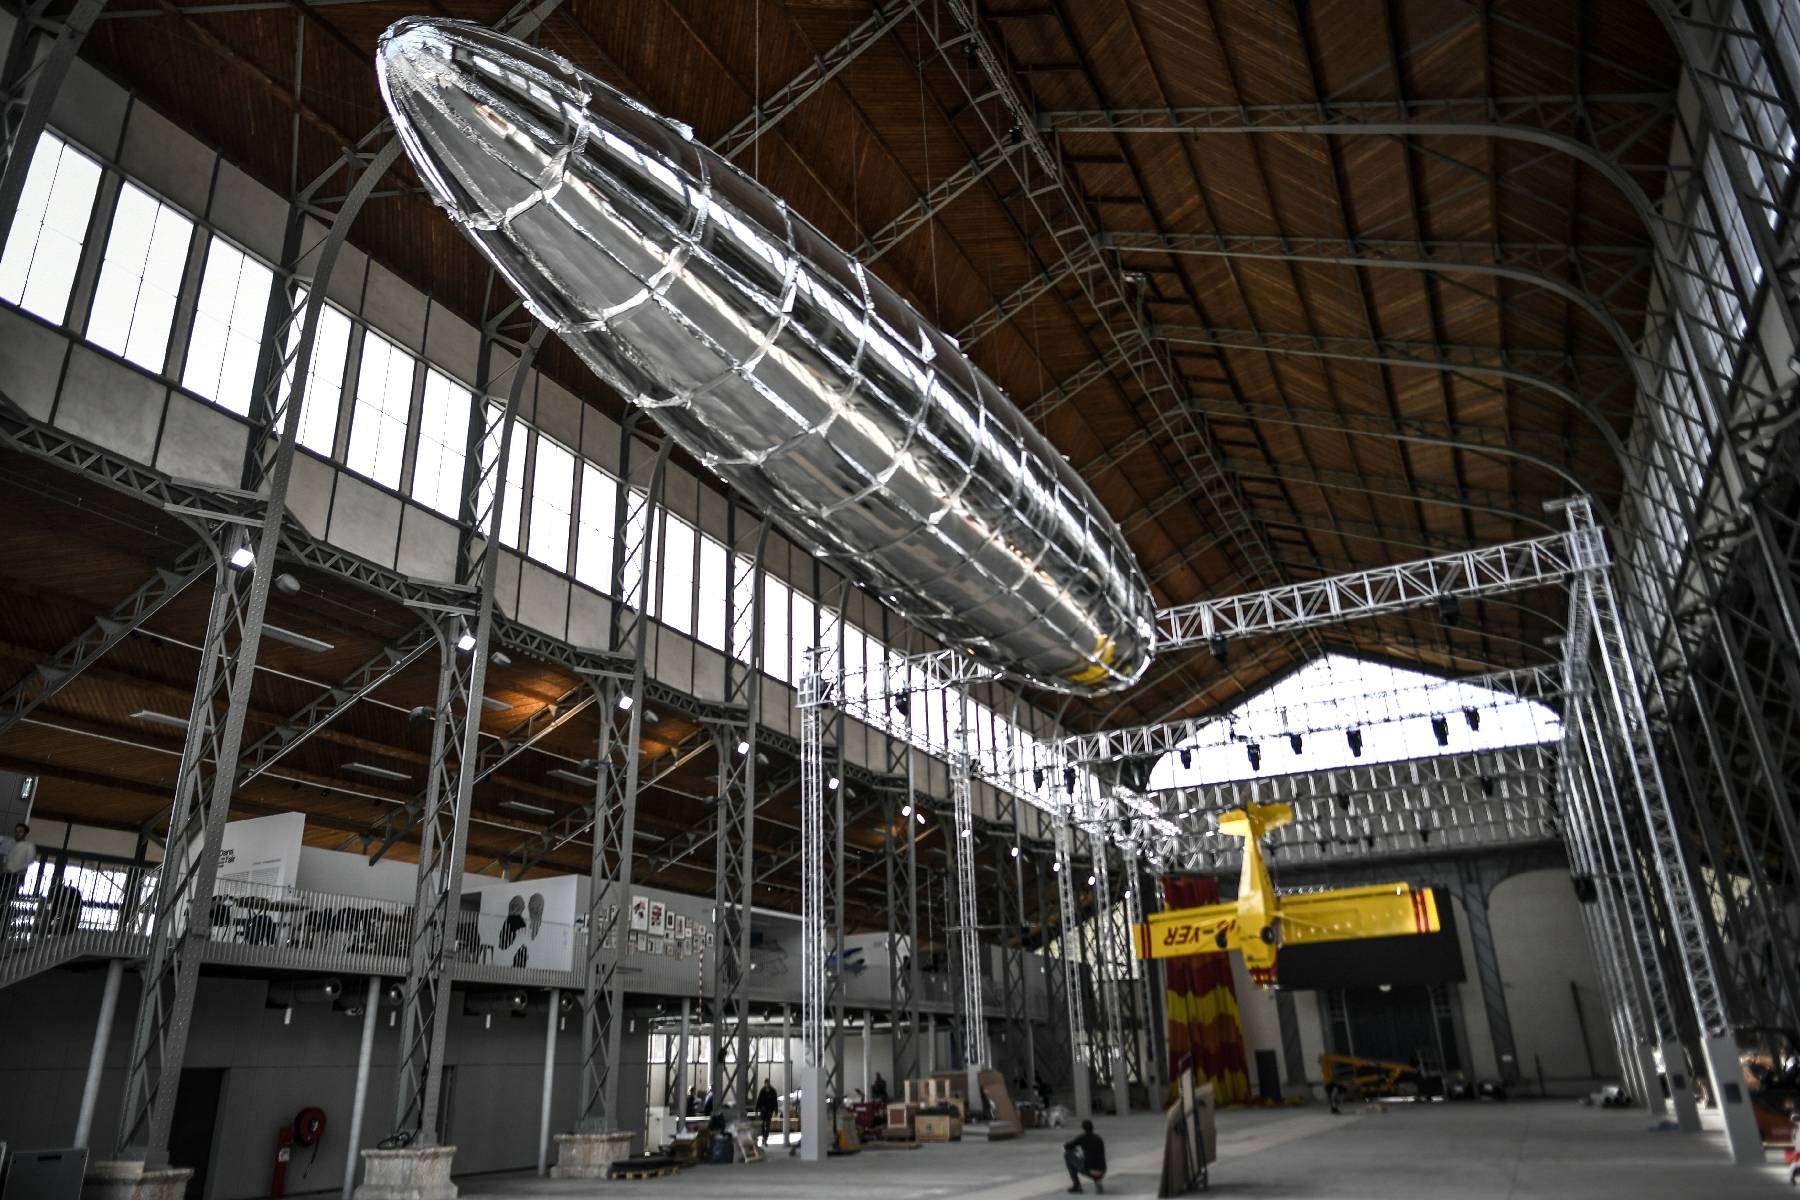 En banlieue parisienne, un ancien hangar à dirigeables transformé en centre d'art